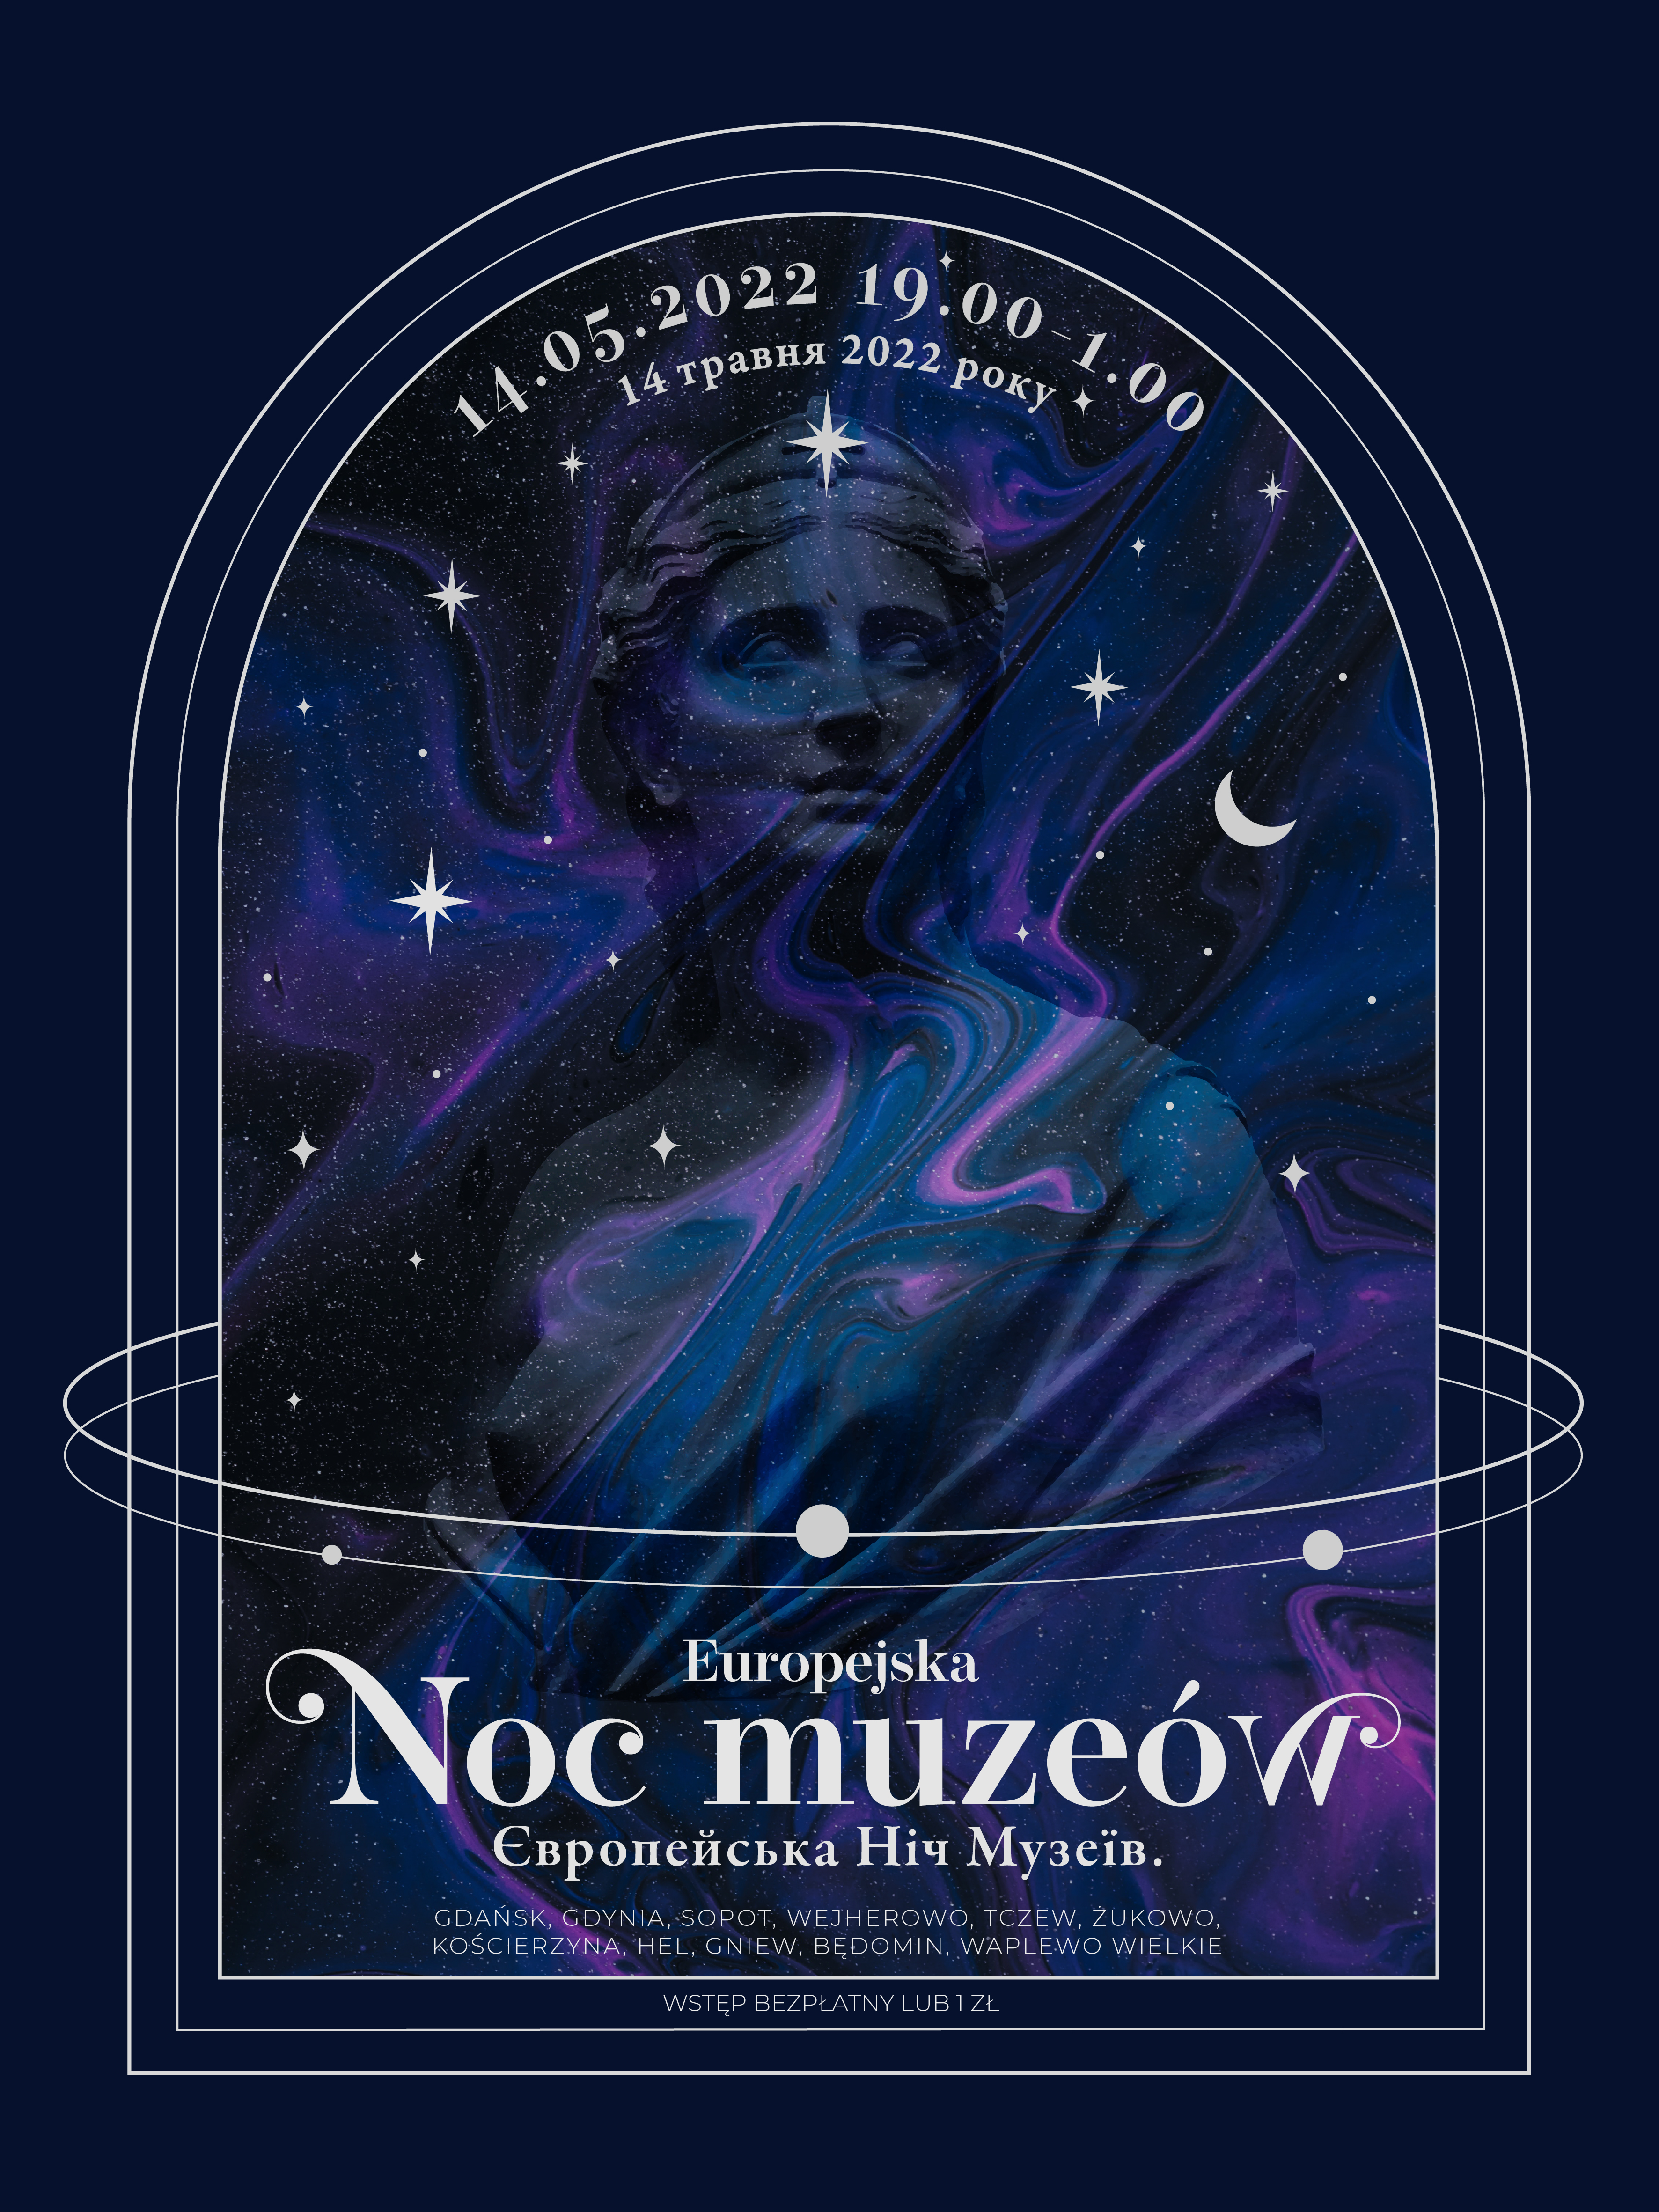 Plakat promujący Europejską Noc Muzeów (Projekt: Natalia Koniuszy).